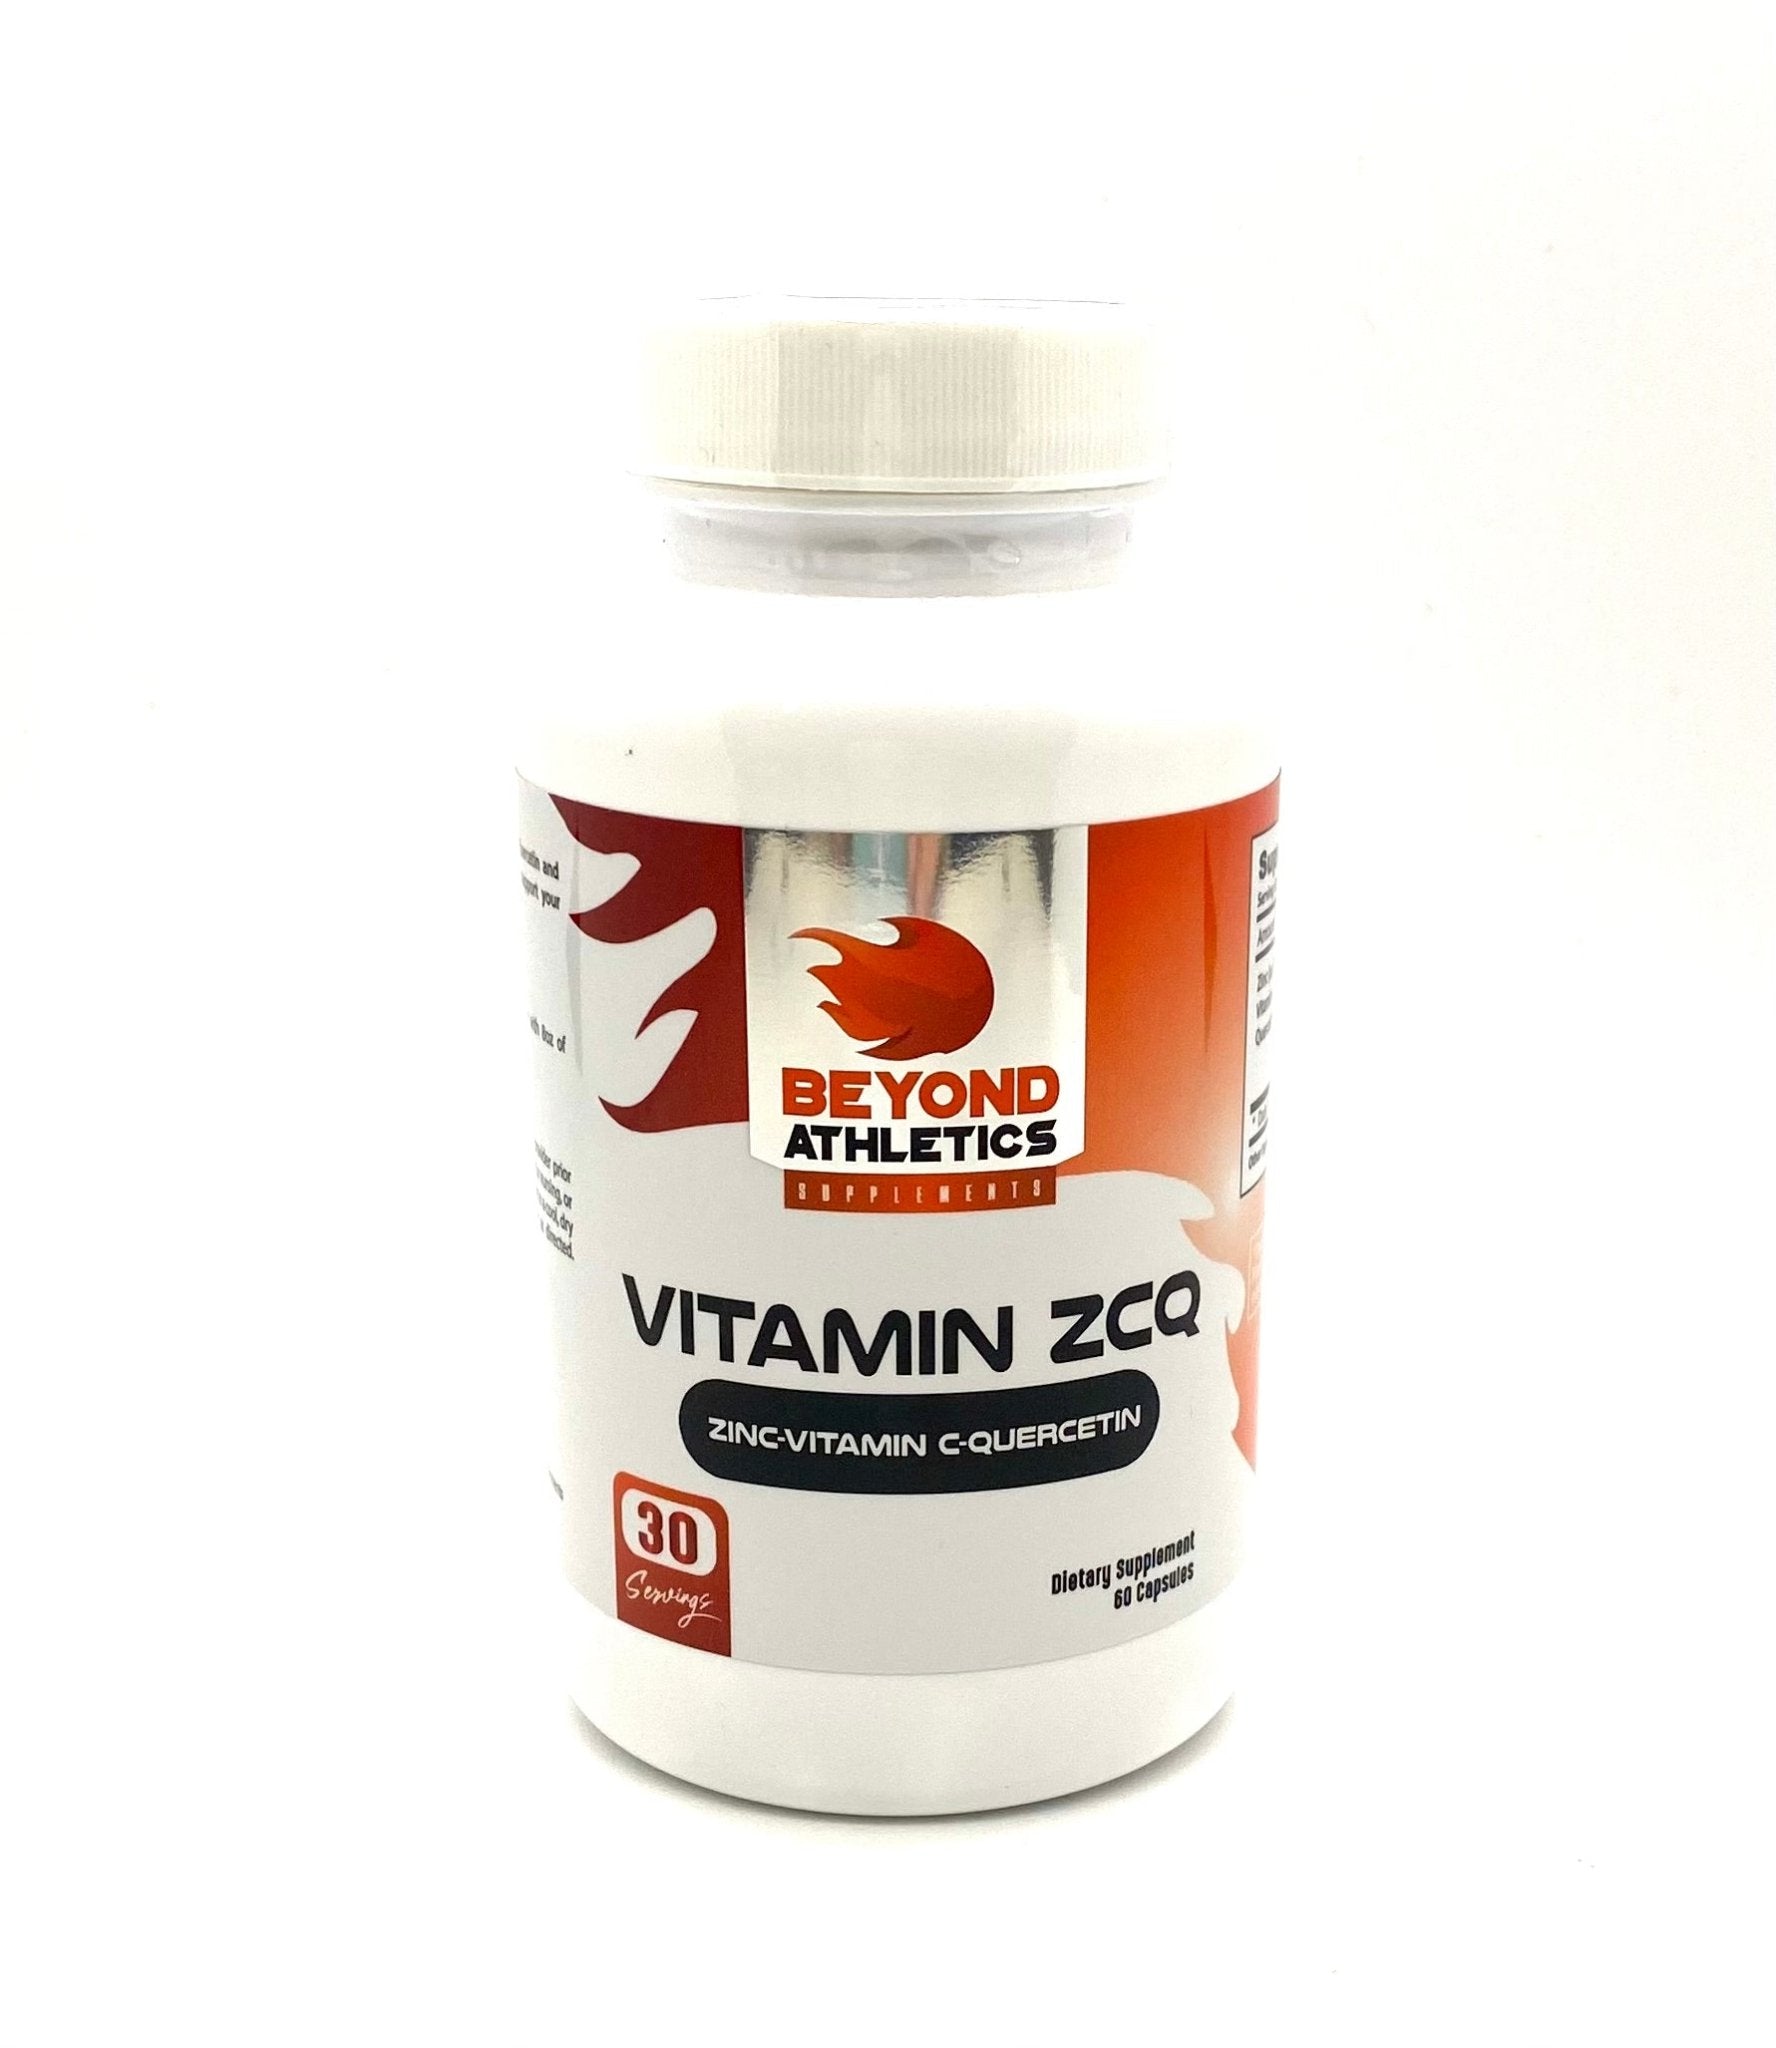 Wholesale case of vitamin ZCQ